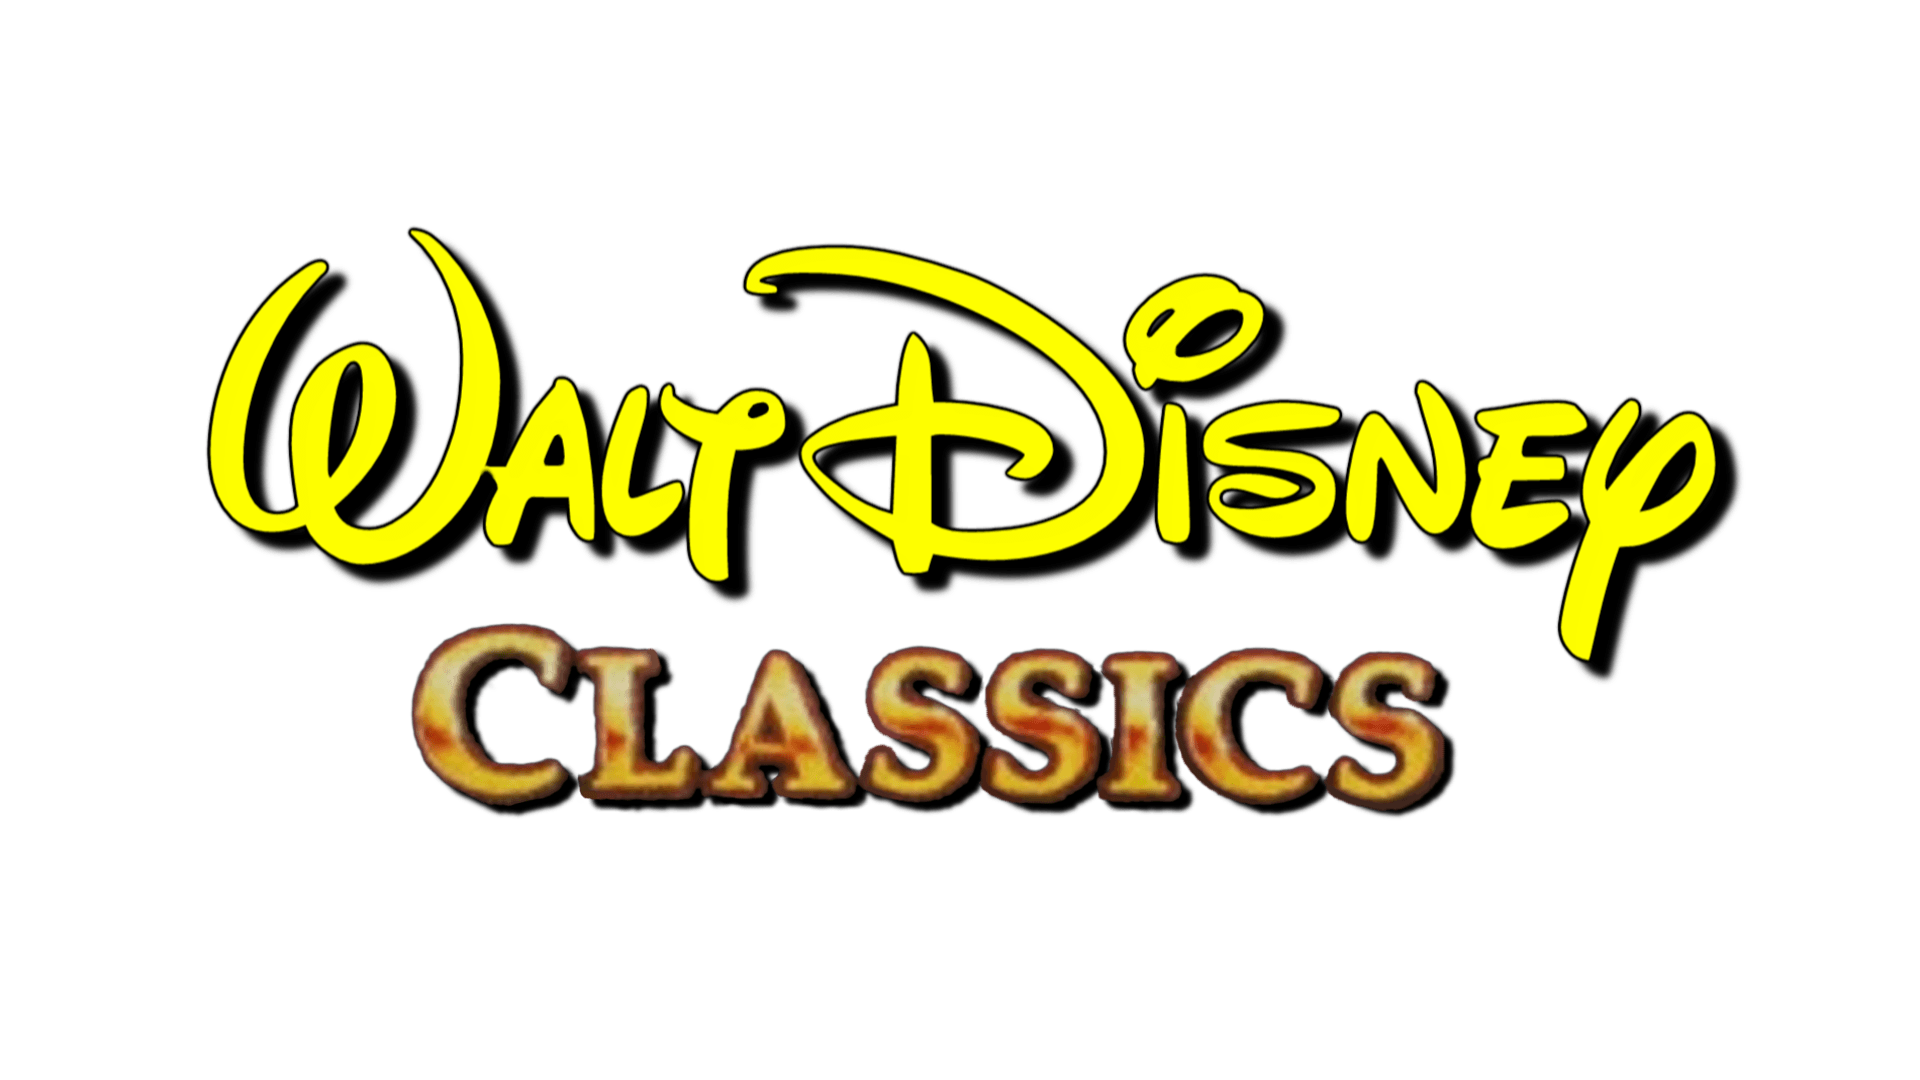 Walt Disney Classics Logo - Walt Disney Classics 1991 1997 Print Logo.png